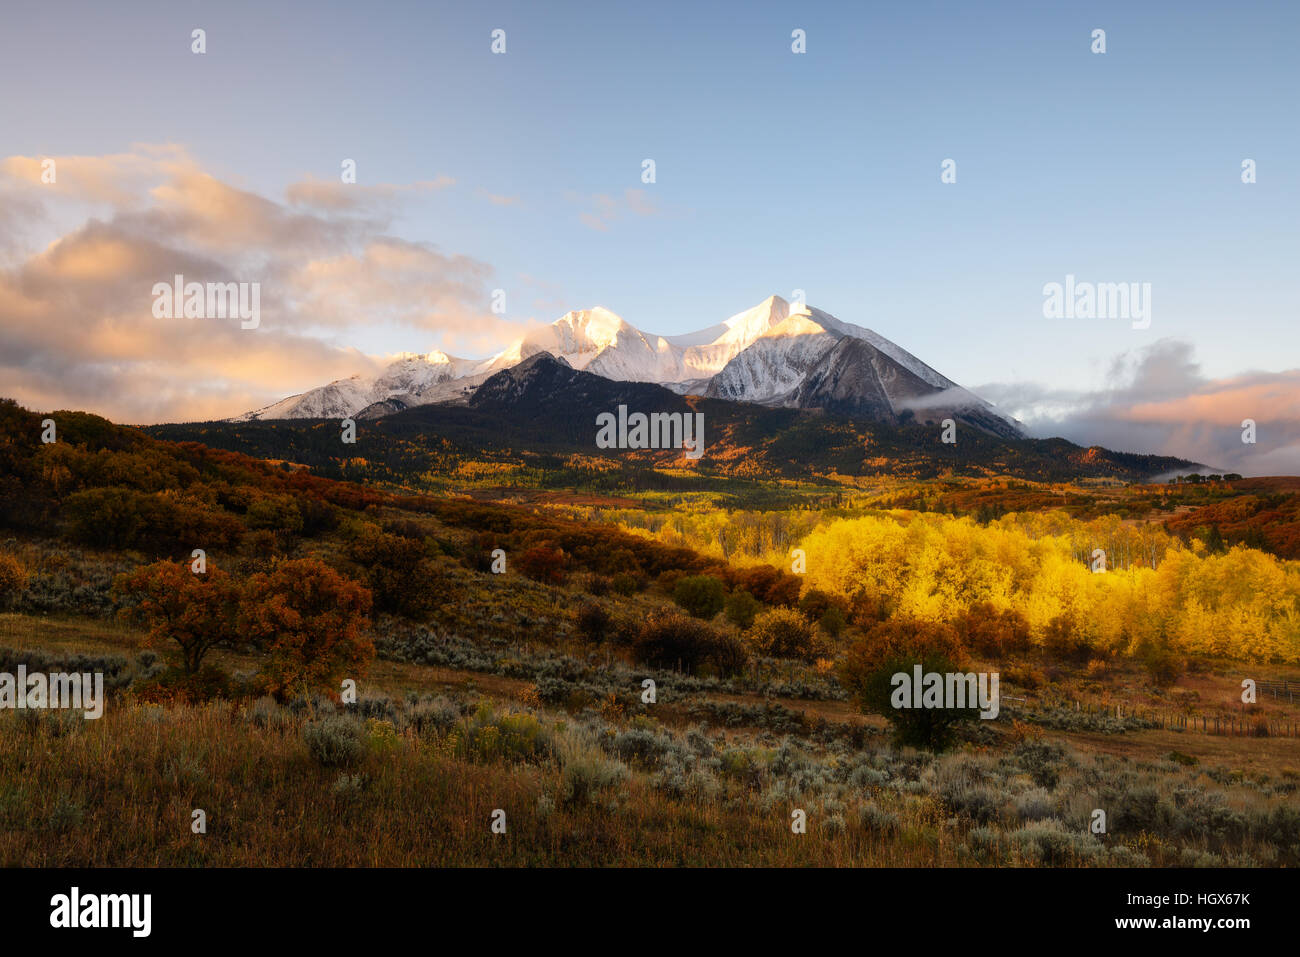 Lever du soleil à Twin sur la montagne du Mont Sopris Elk et monter avec la couleur de l'automne et morning mist, Maroon Bells Snowmass Wilderness Area, Colorado Banque D'Images